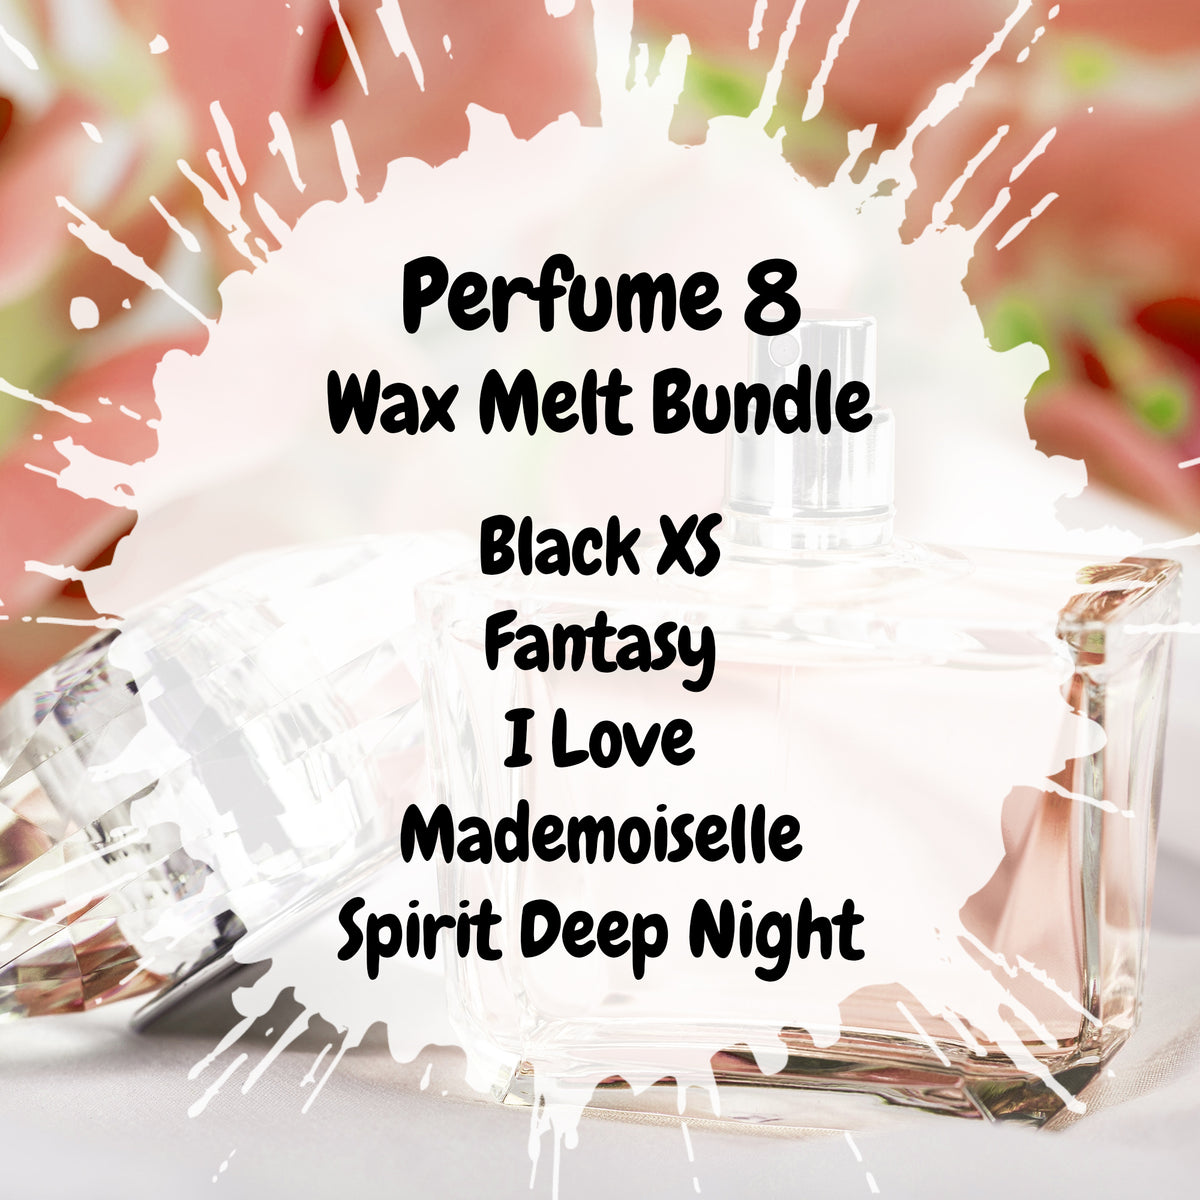 Perfume 8 Wax Melt Bundle